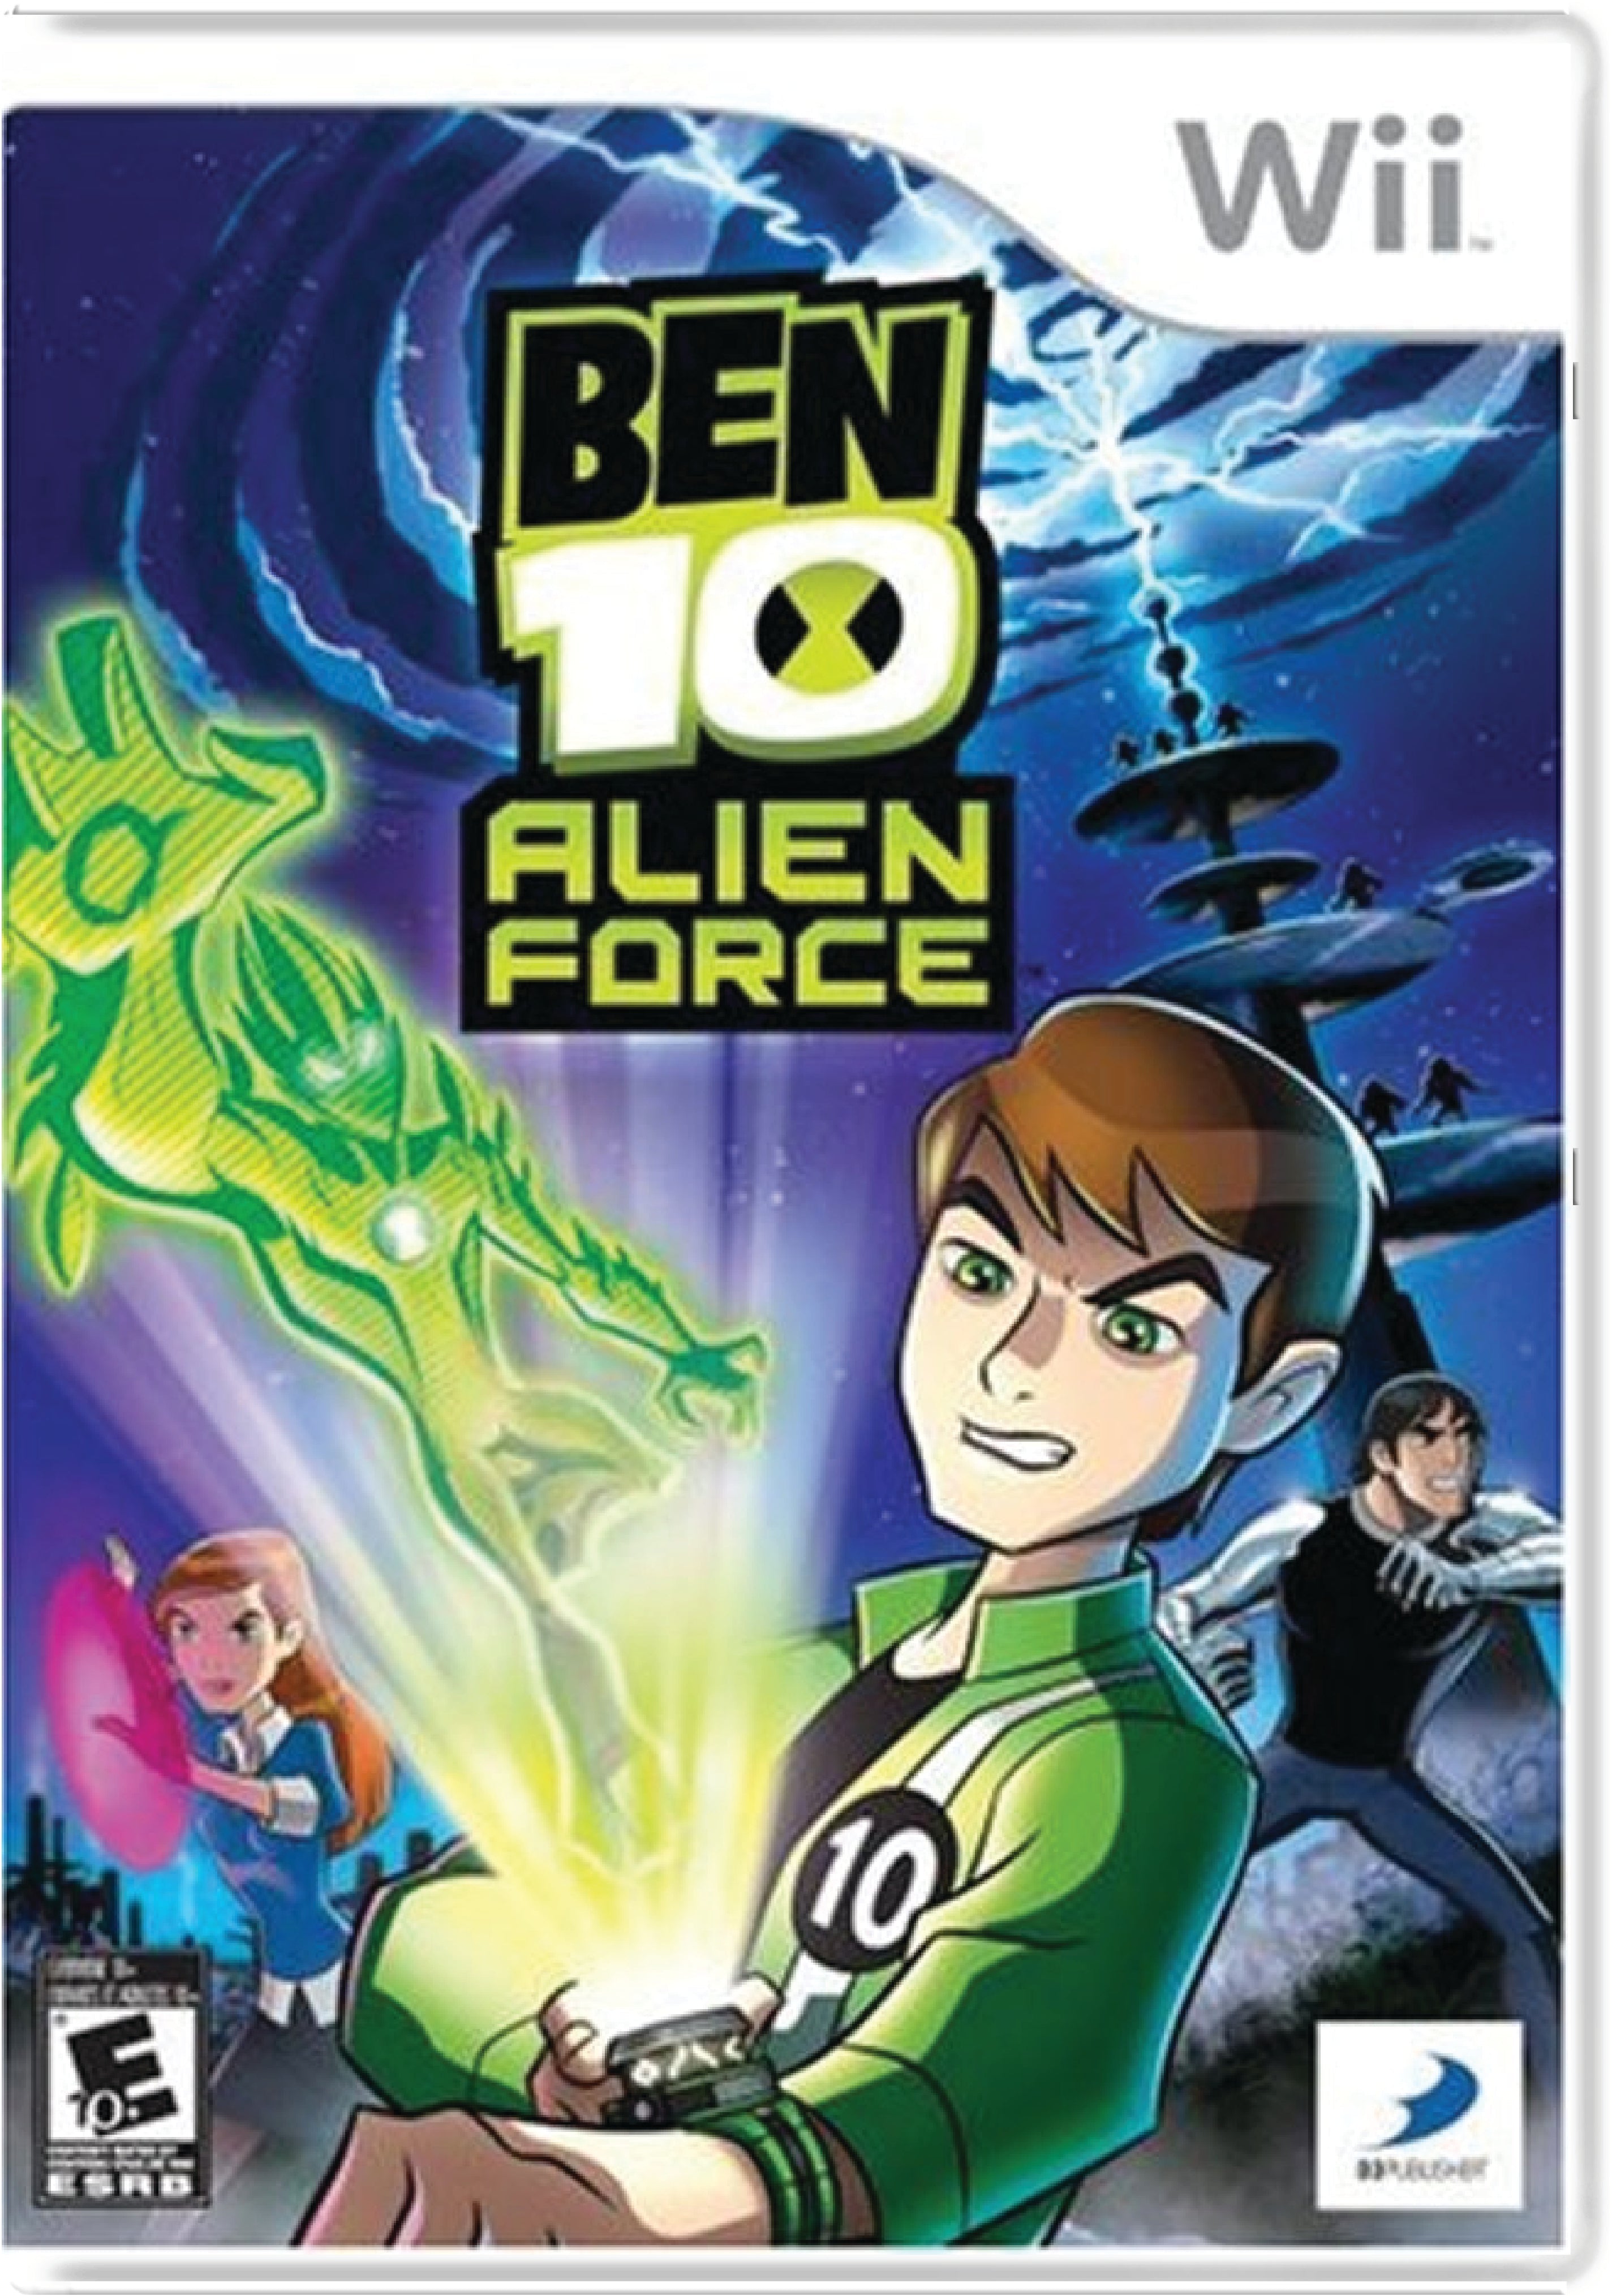 Ben 10 Alien Force Cover Art